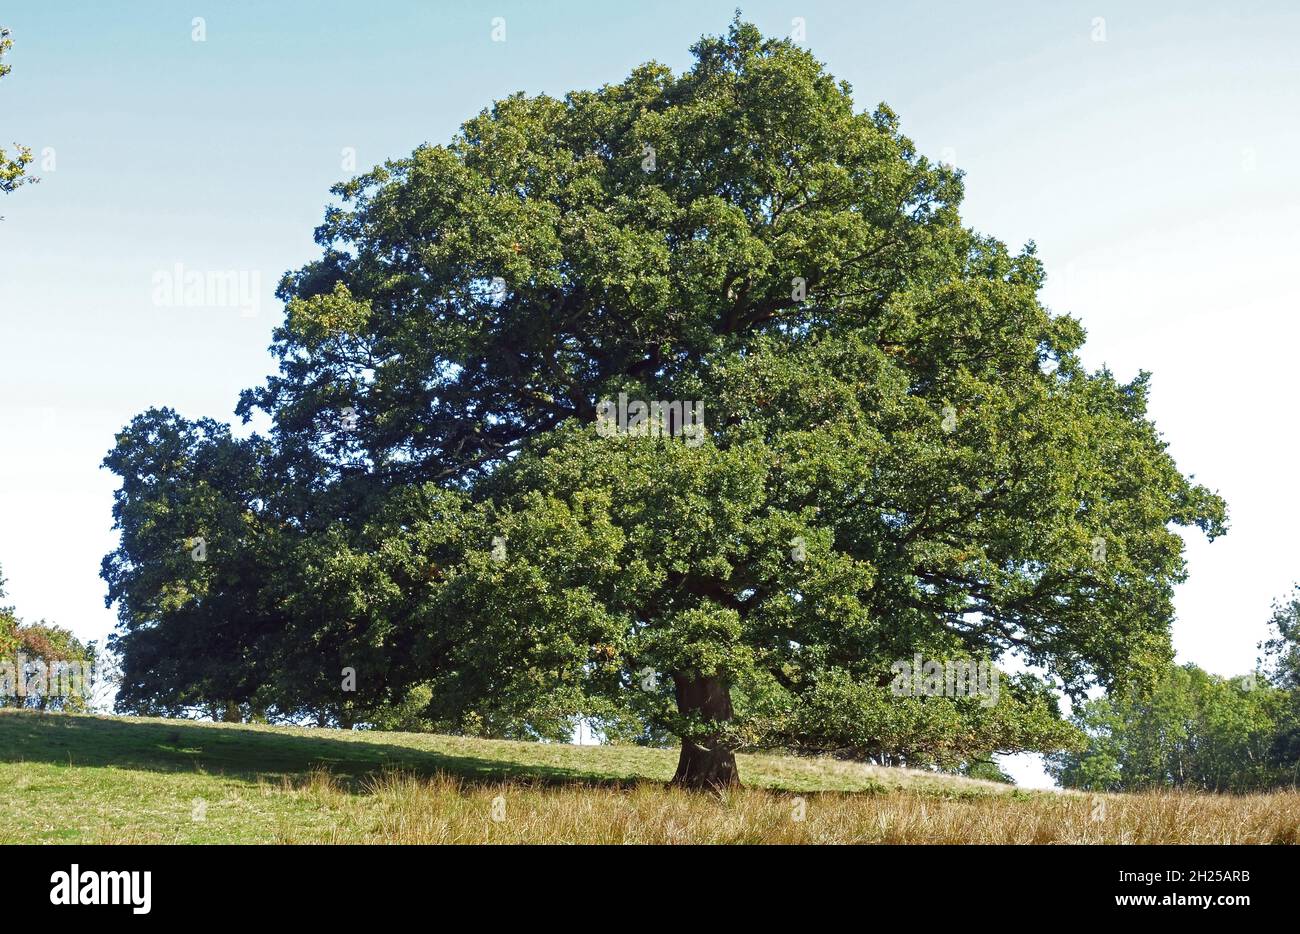 Roble inglés o europeo (Quercus robur) grande y maduro, bien formado, con corona de extensión en hoja completa y undergrazed por ovejas, Berkshire, Septembe Foto de stock